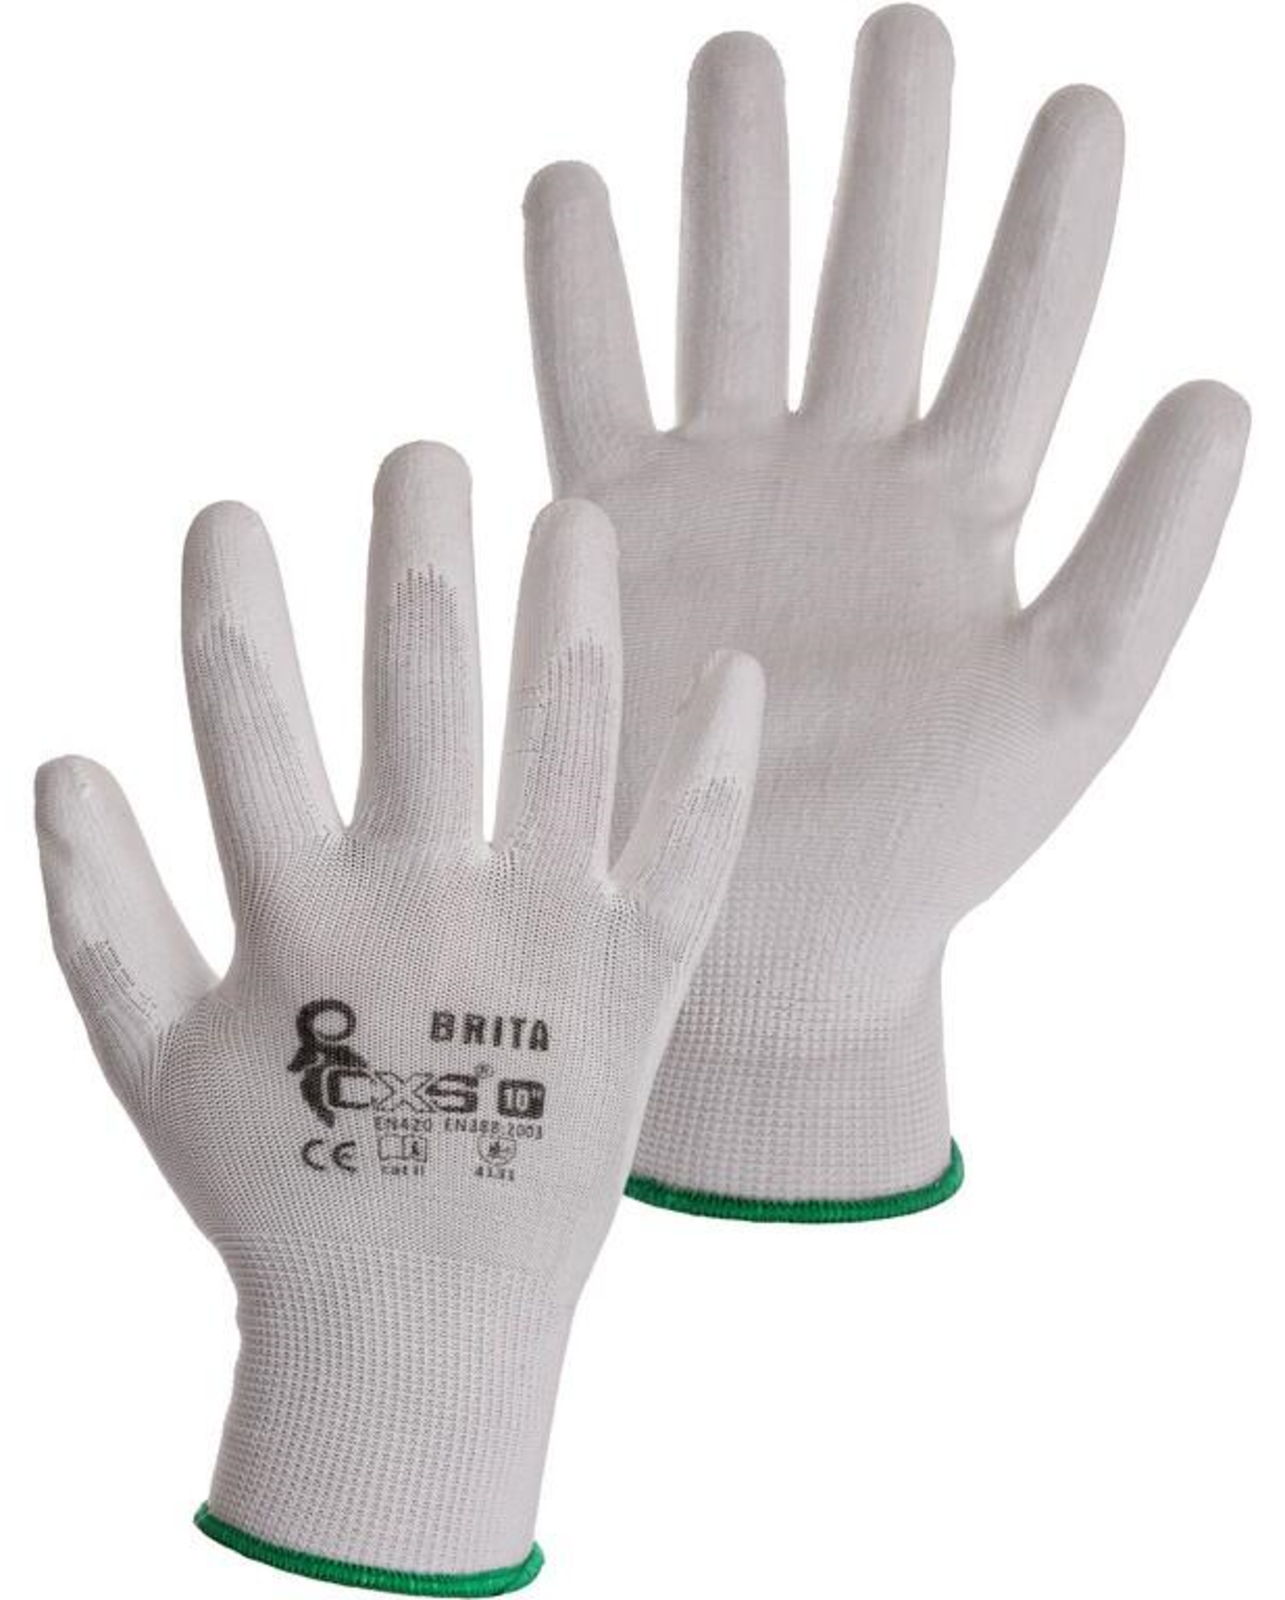 Pracovné rukavice CXS Brita biele - veľkosť: 11/XXL, farba: biela